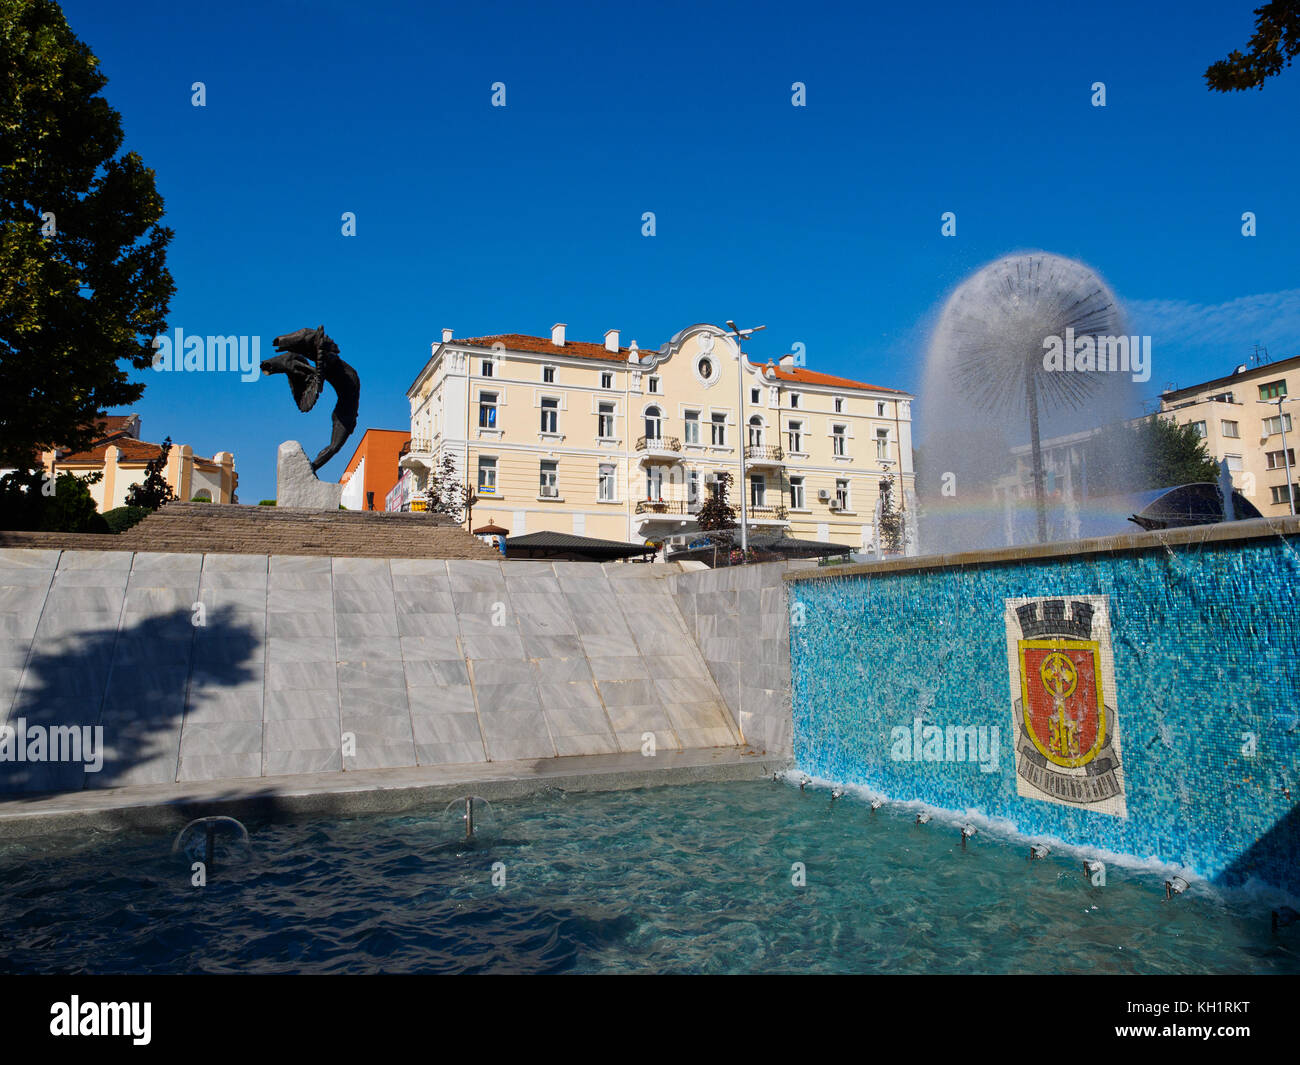 Le monument de l'envie et la fontaine dans la ville d'haskova, Bulgarie Banque D'Images